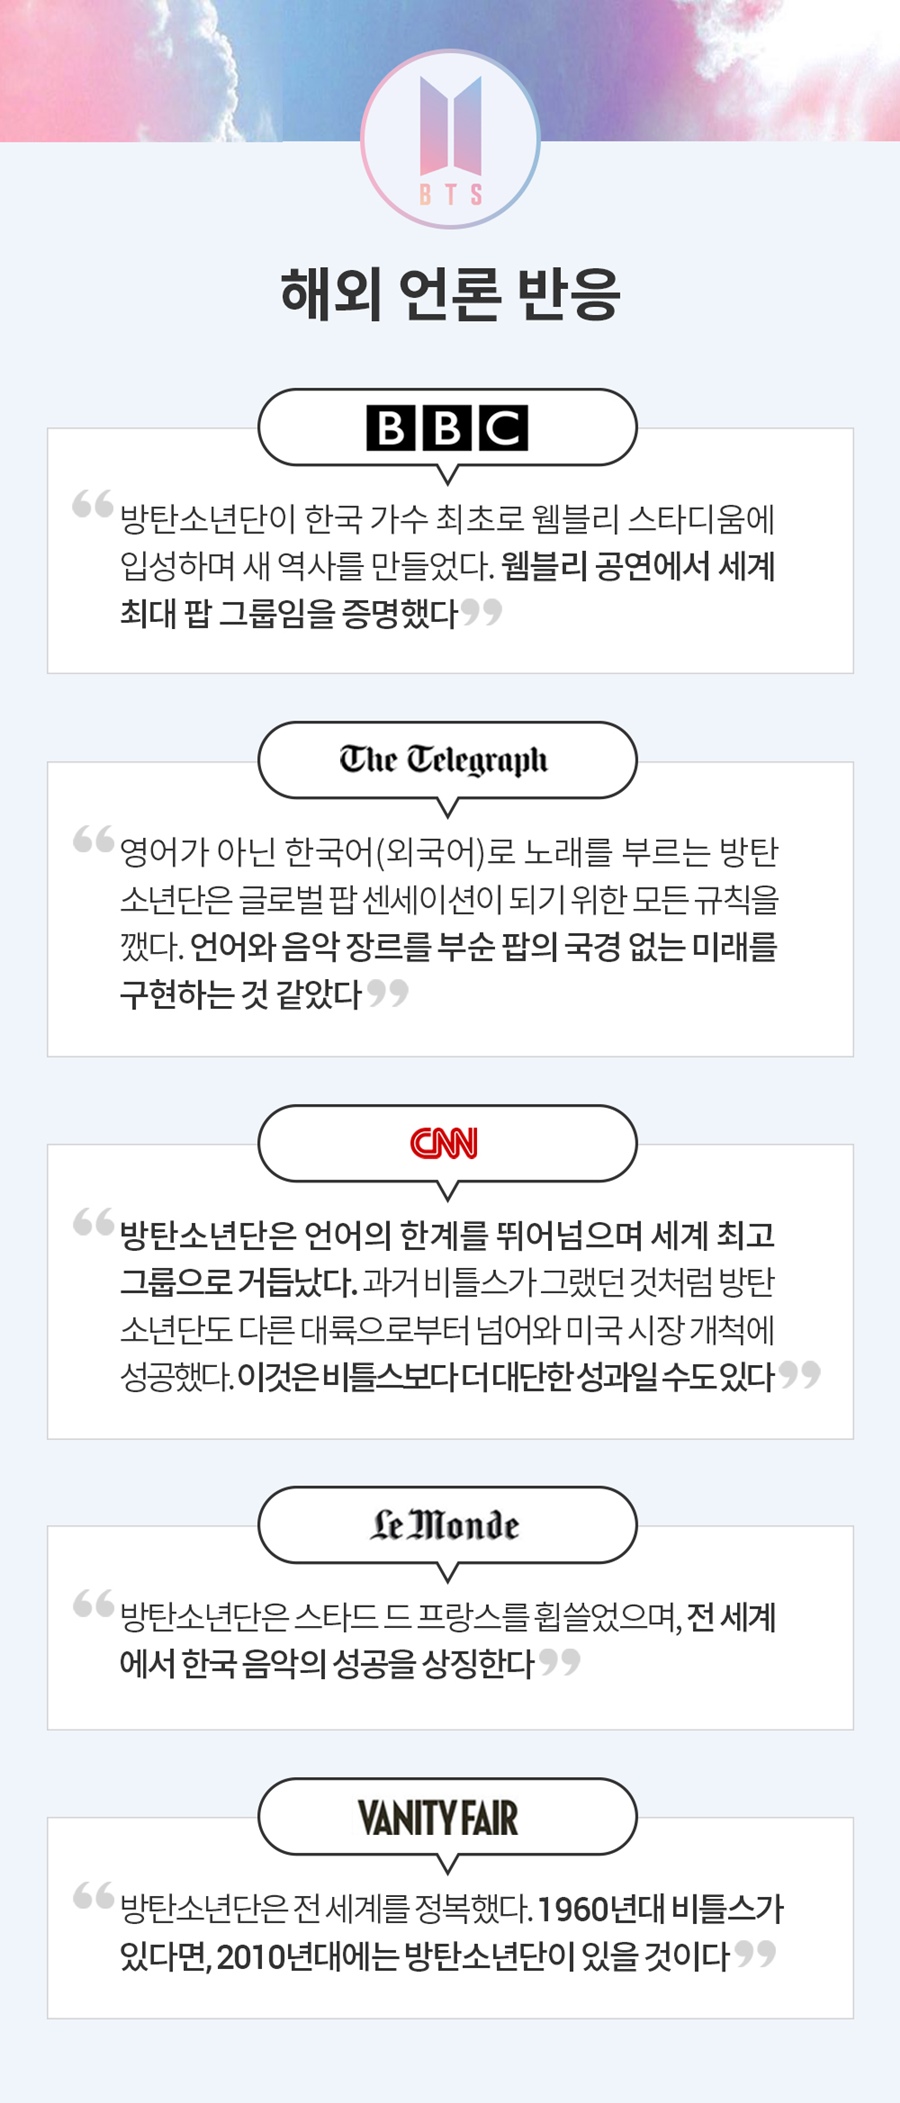 방탄소년단 웸블리 공연, 해외 매체 보도 / 사진: 조선일보 일본어판DB